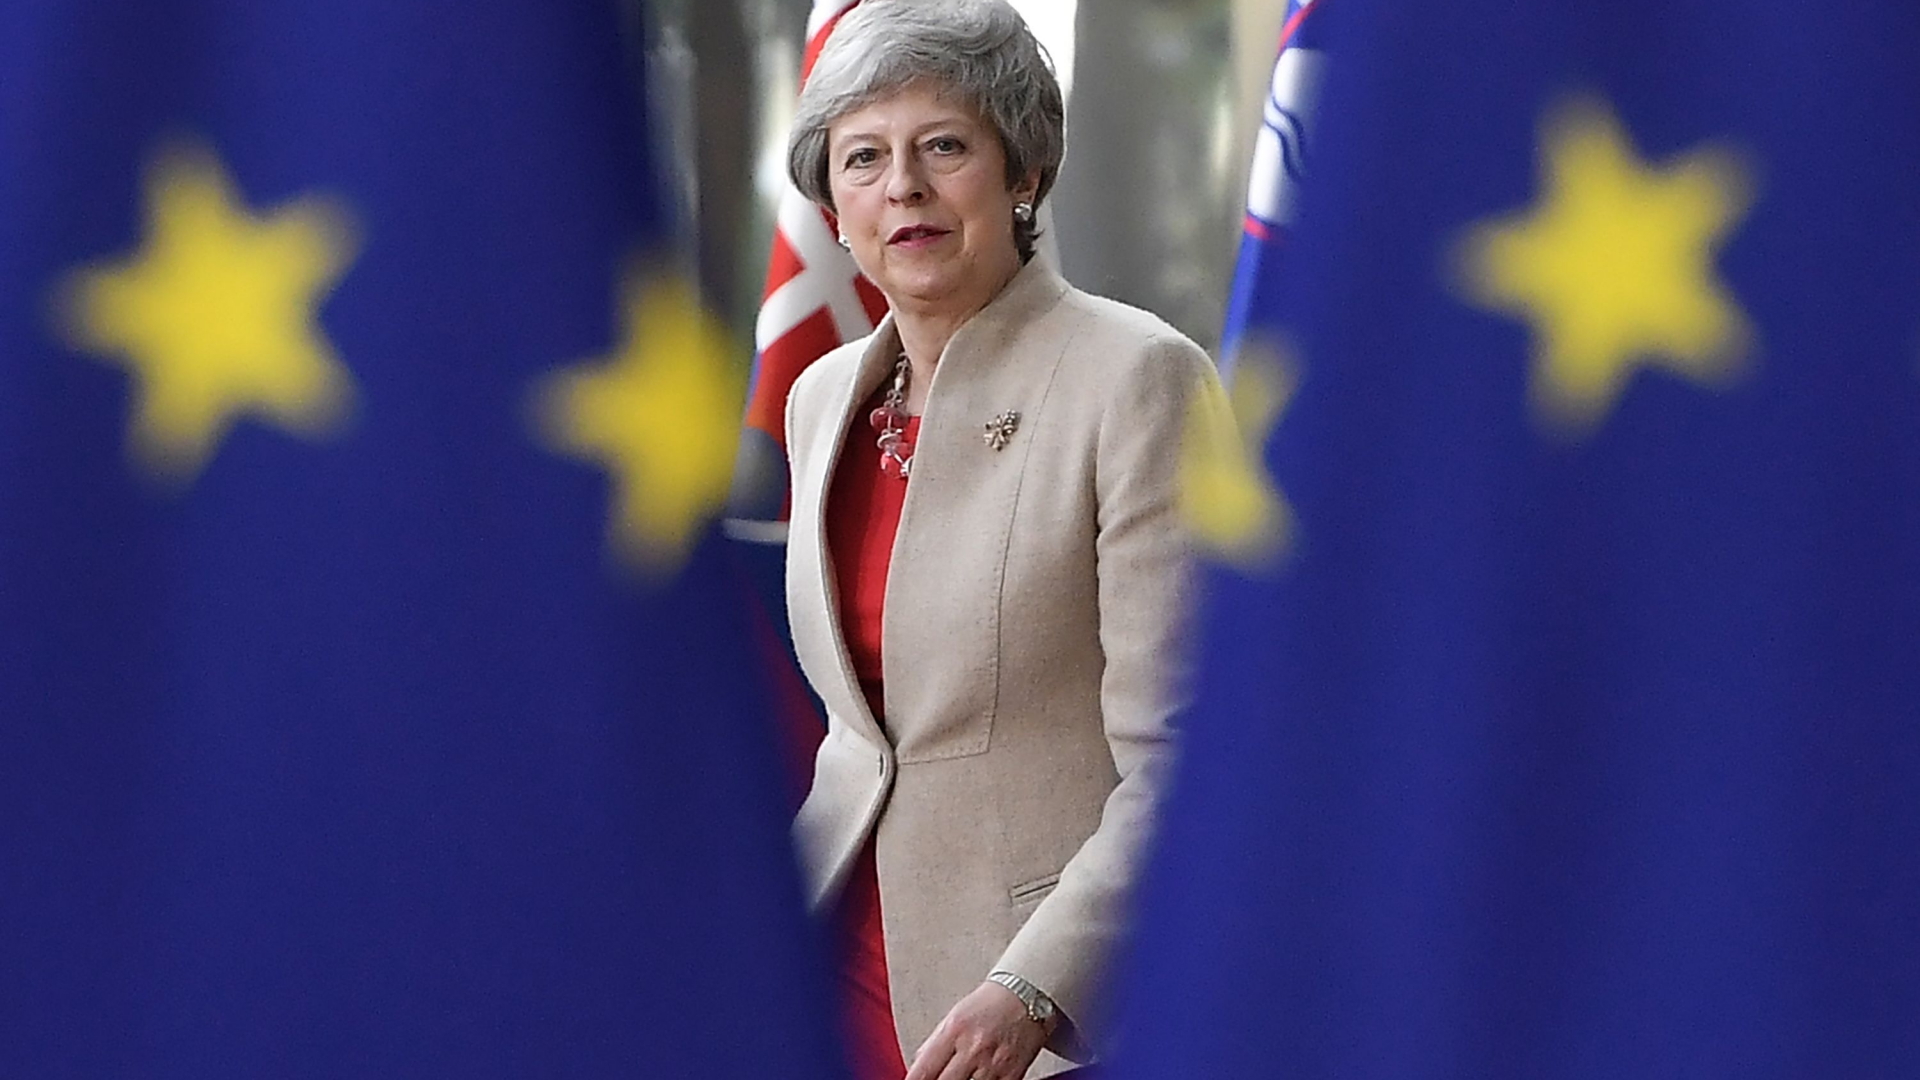 Die britische Premierministerin Theresa May blickt durch zwei EU-Fahnen hindurch. | AFP